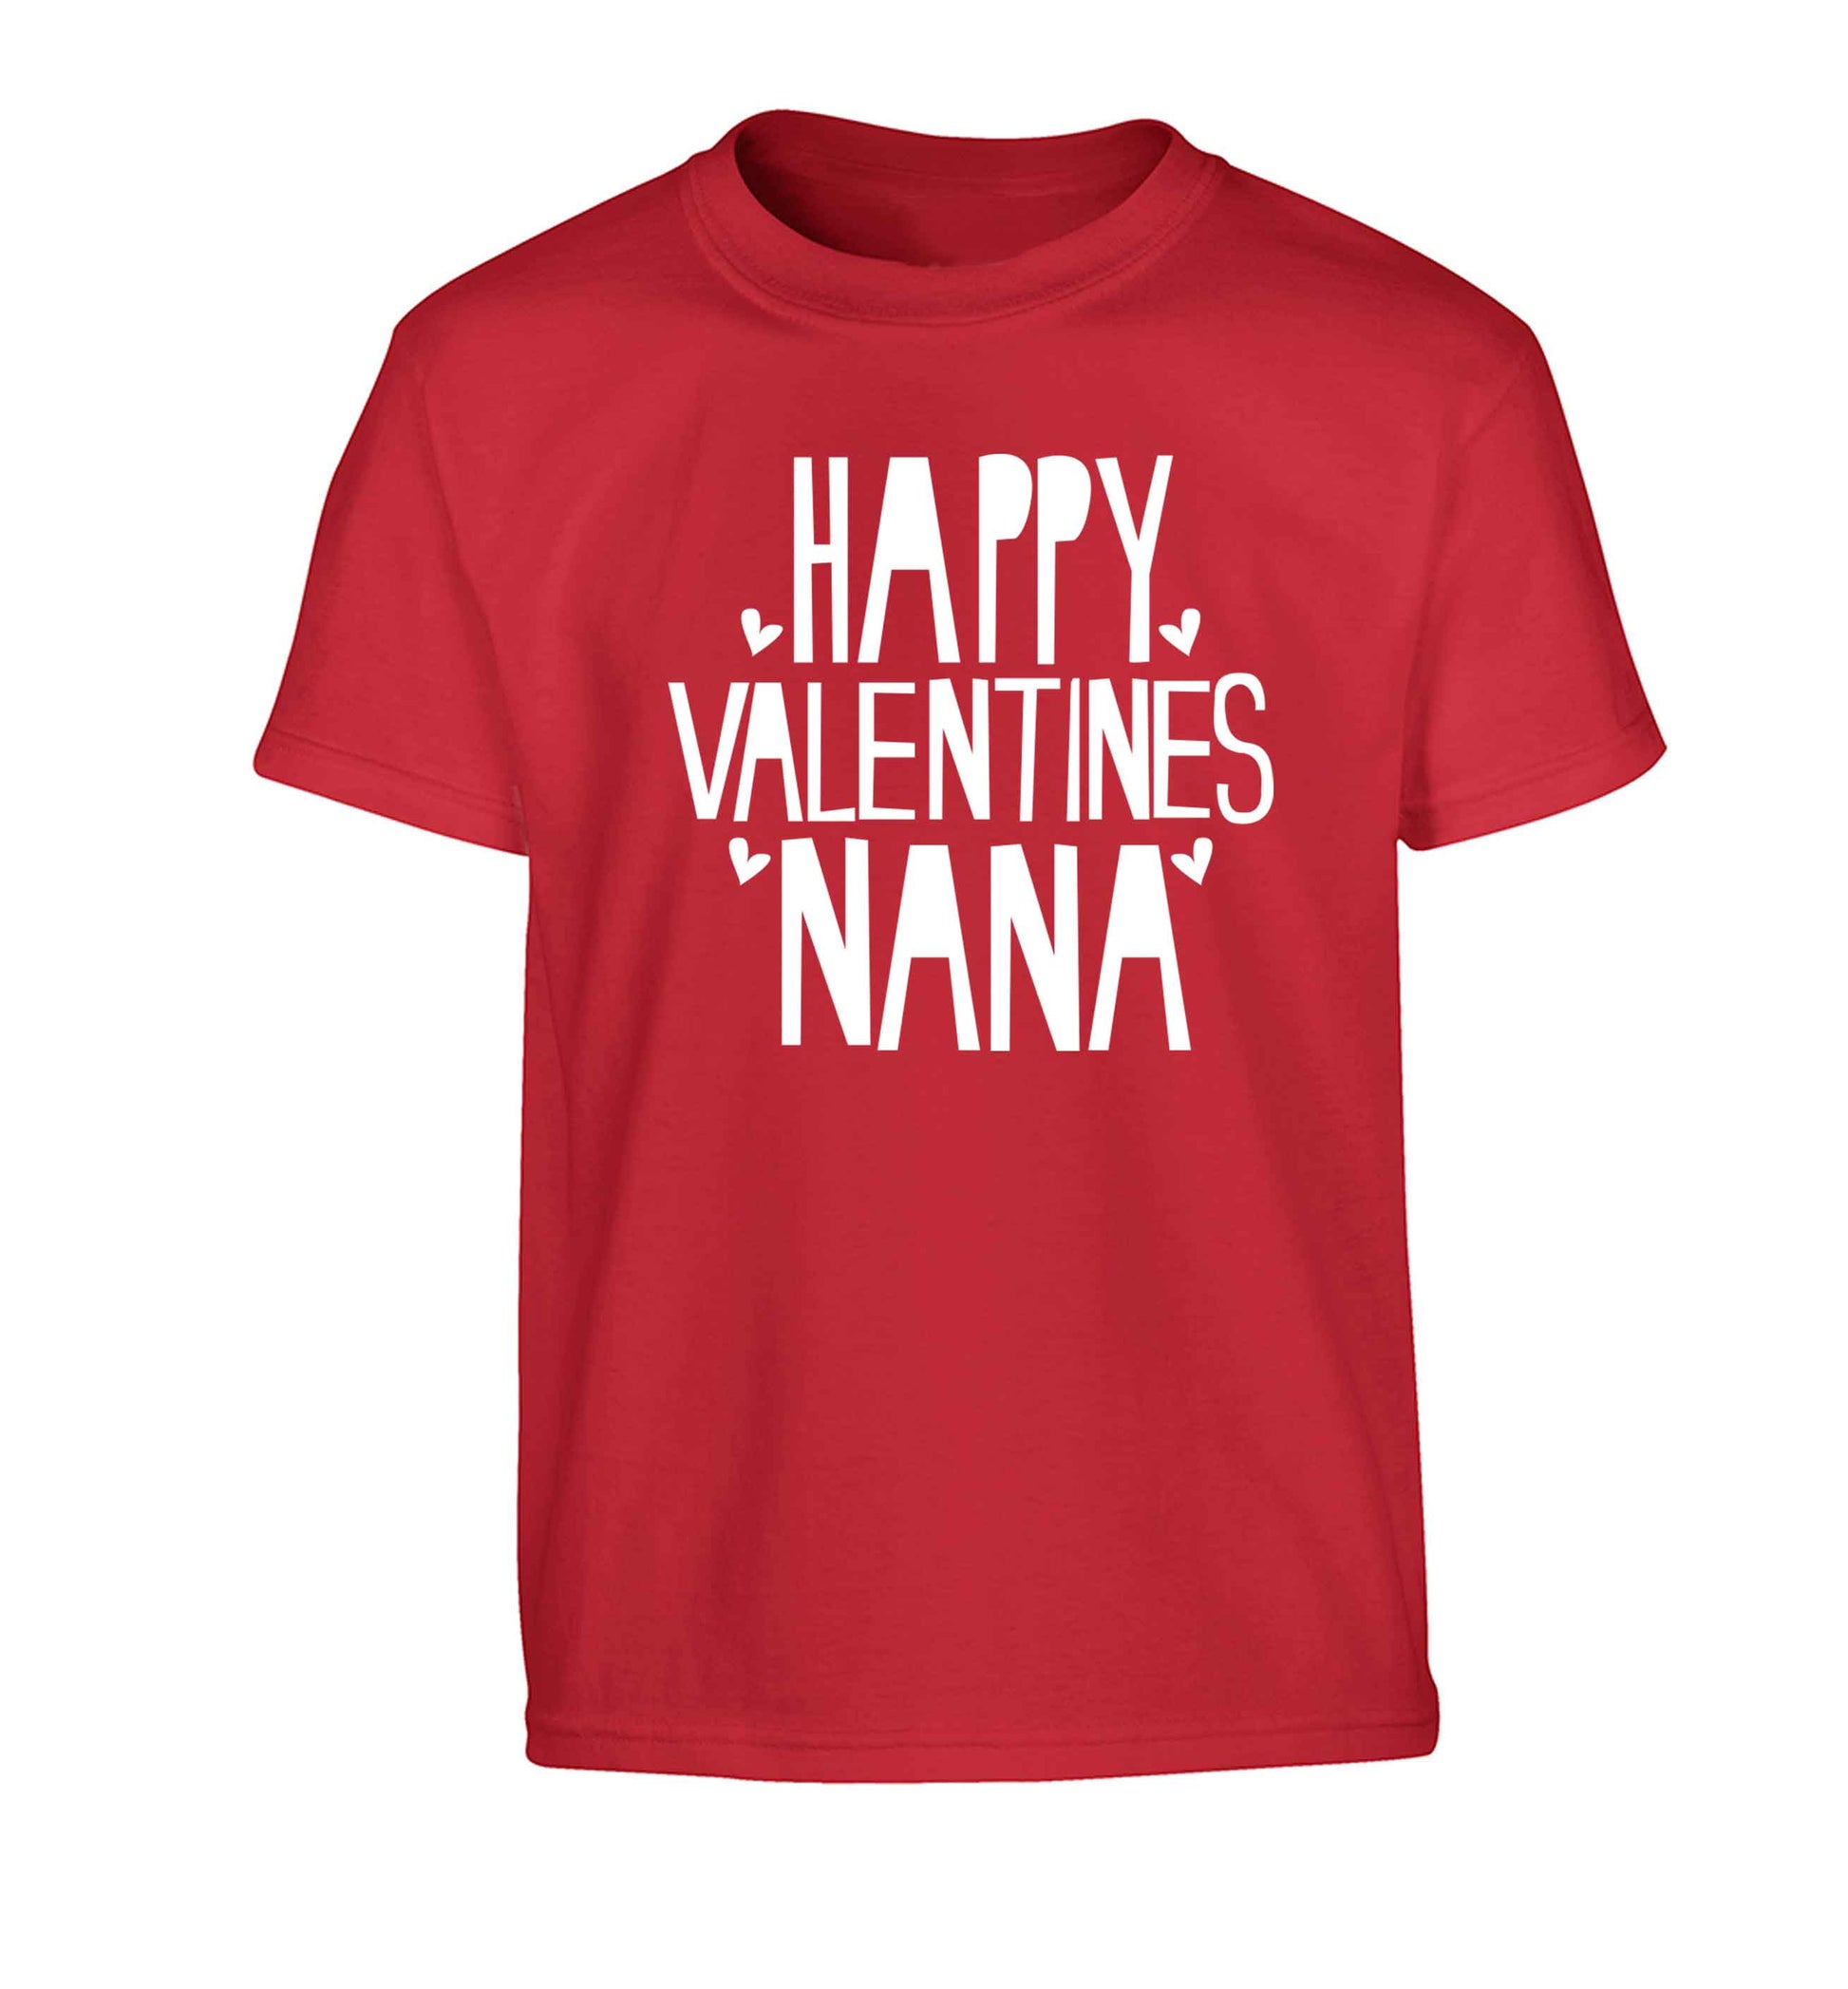 Happy valentines nana Children's red Tshirt 12-13 Years